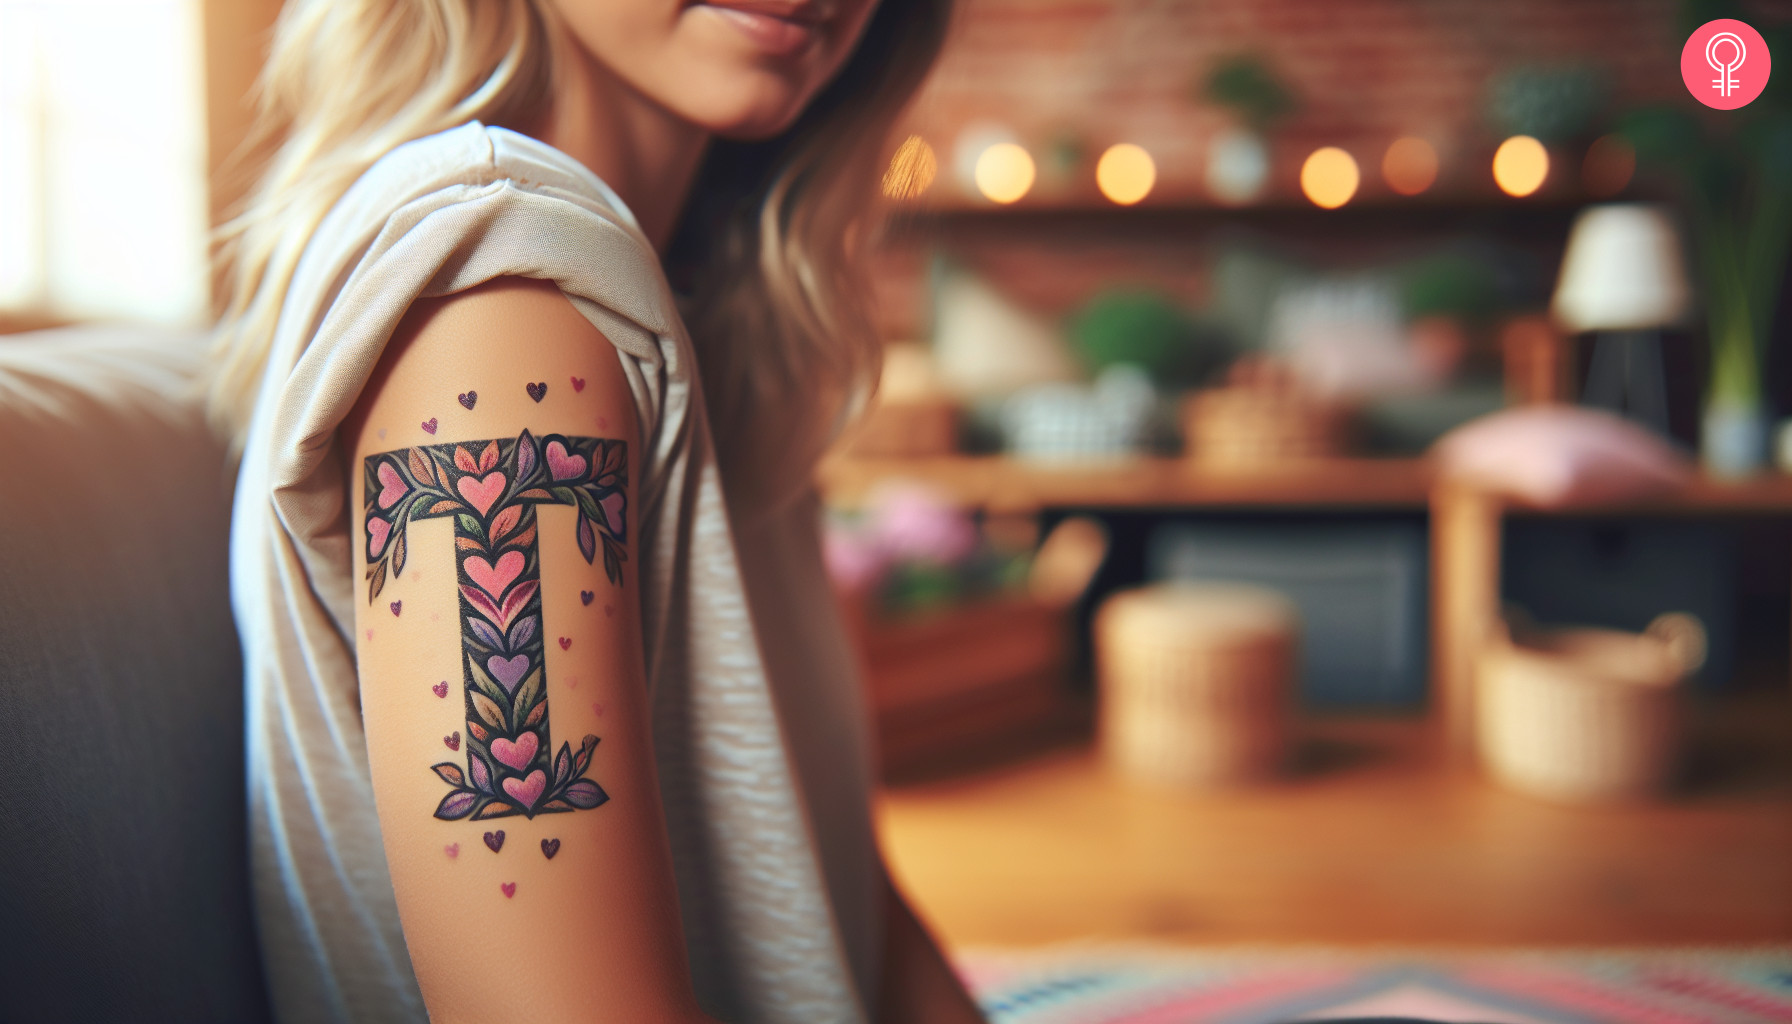 A fancy T letter heart tattoo on a woman’s upper arm